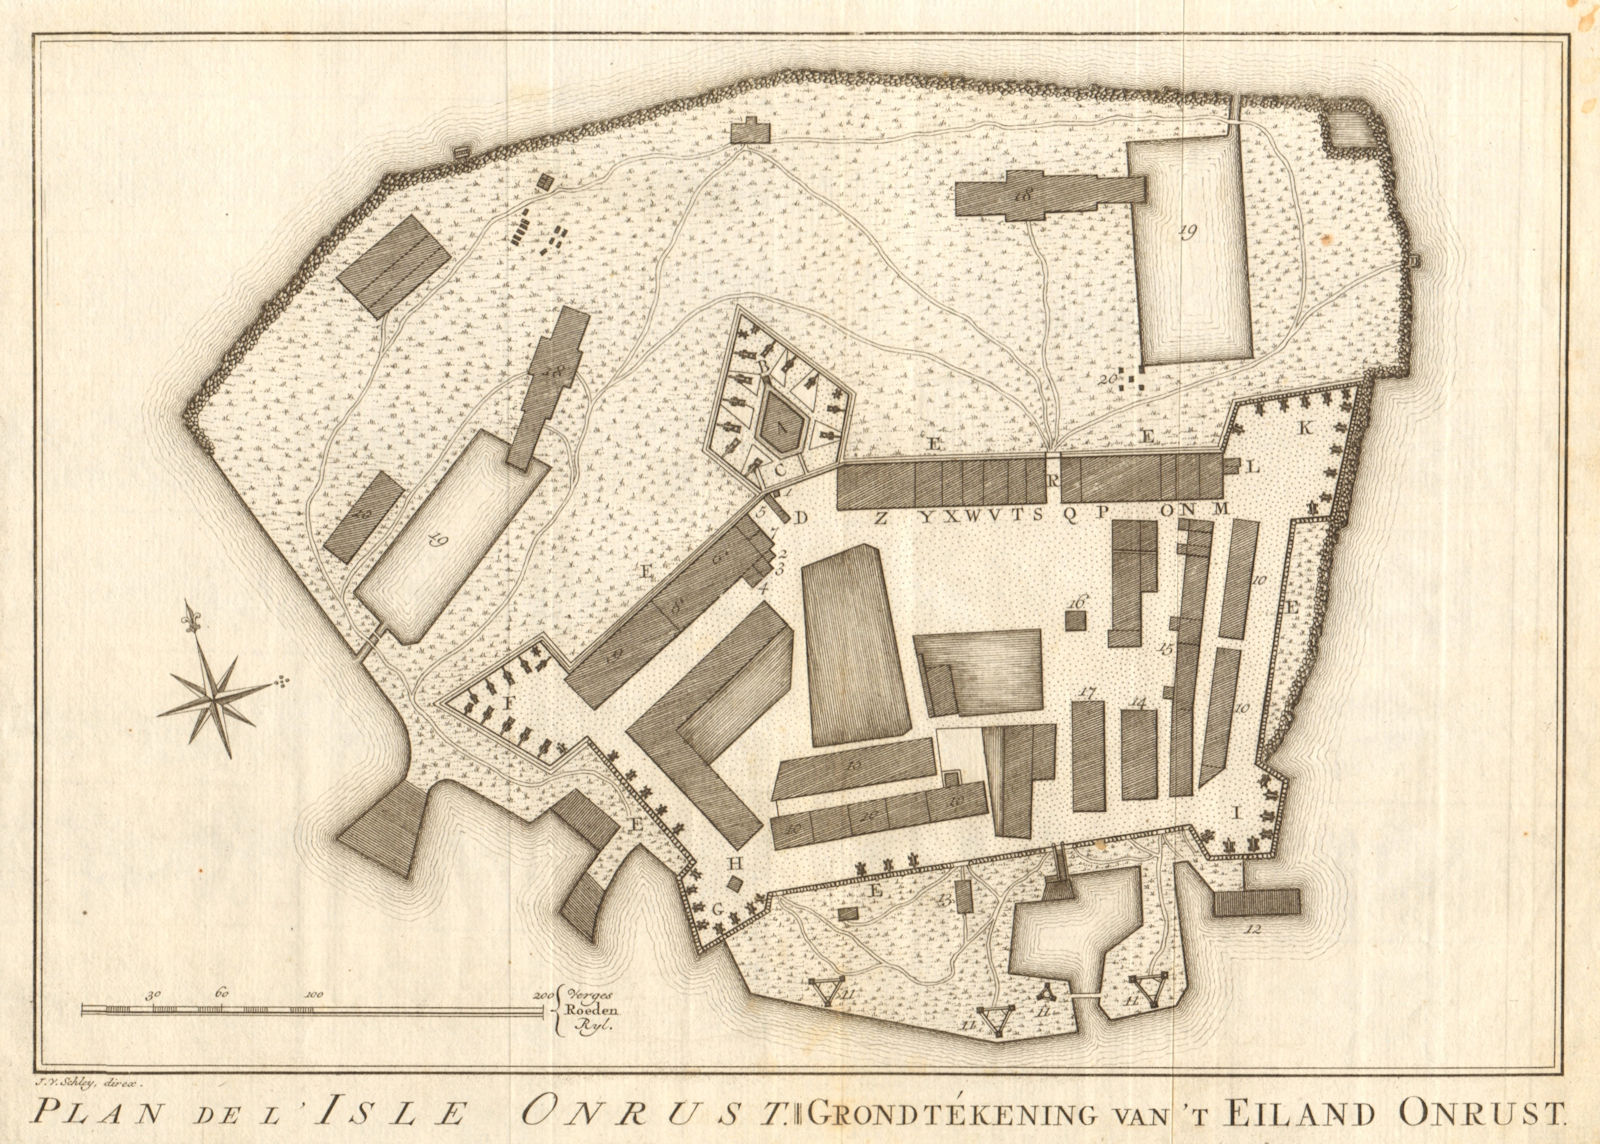 'Plan de I'Isle Onrust'. Jakarta. Pulau Kapal island. BELLIN/SCHLEY 1763 map